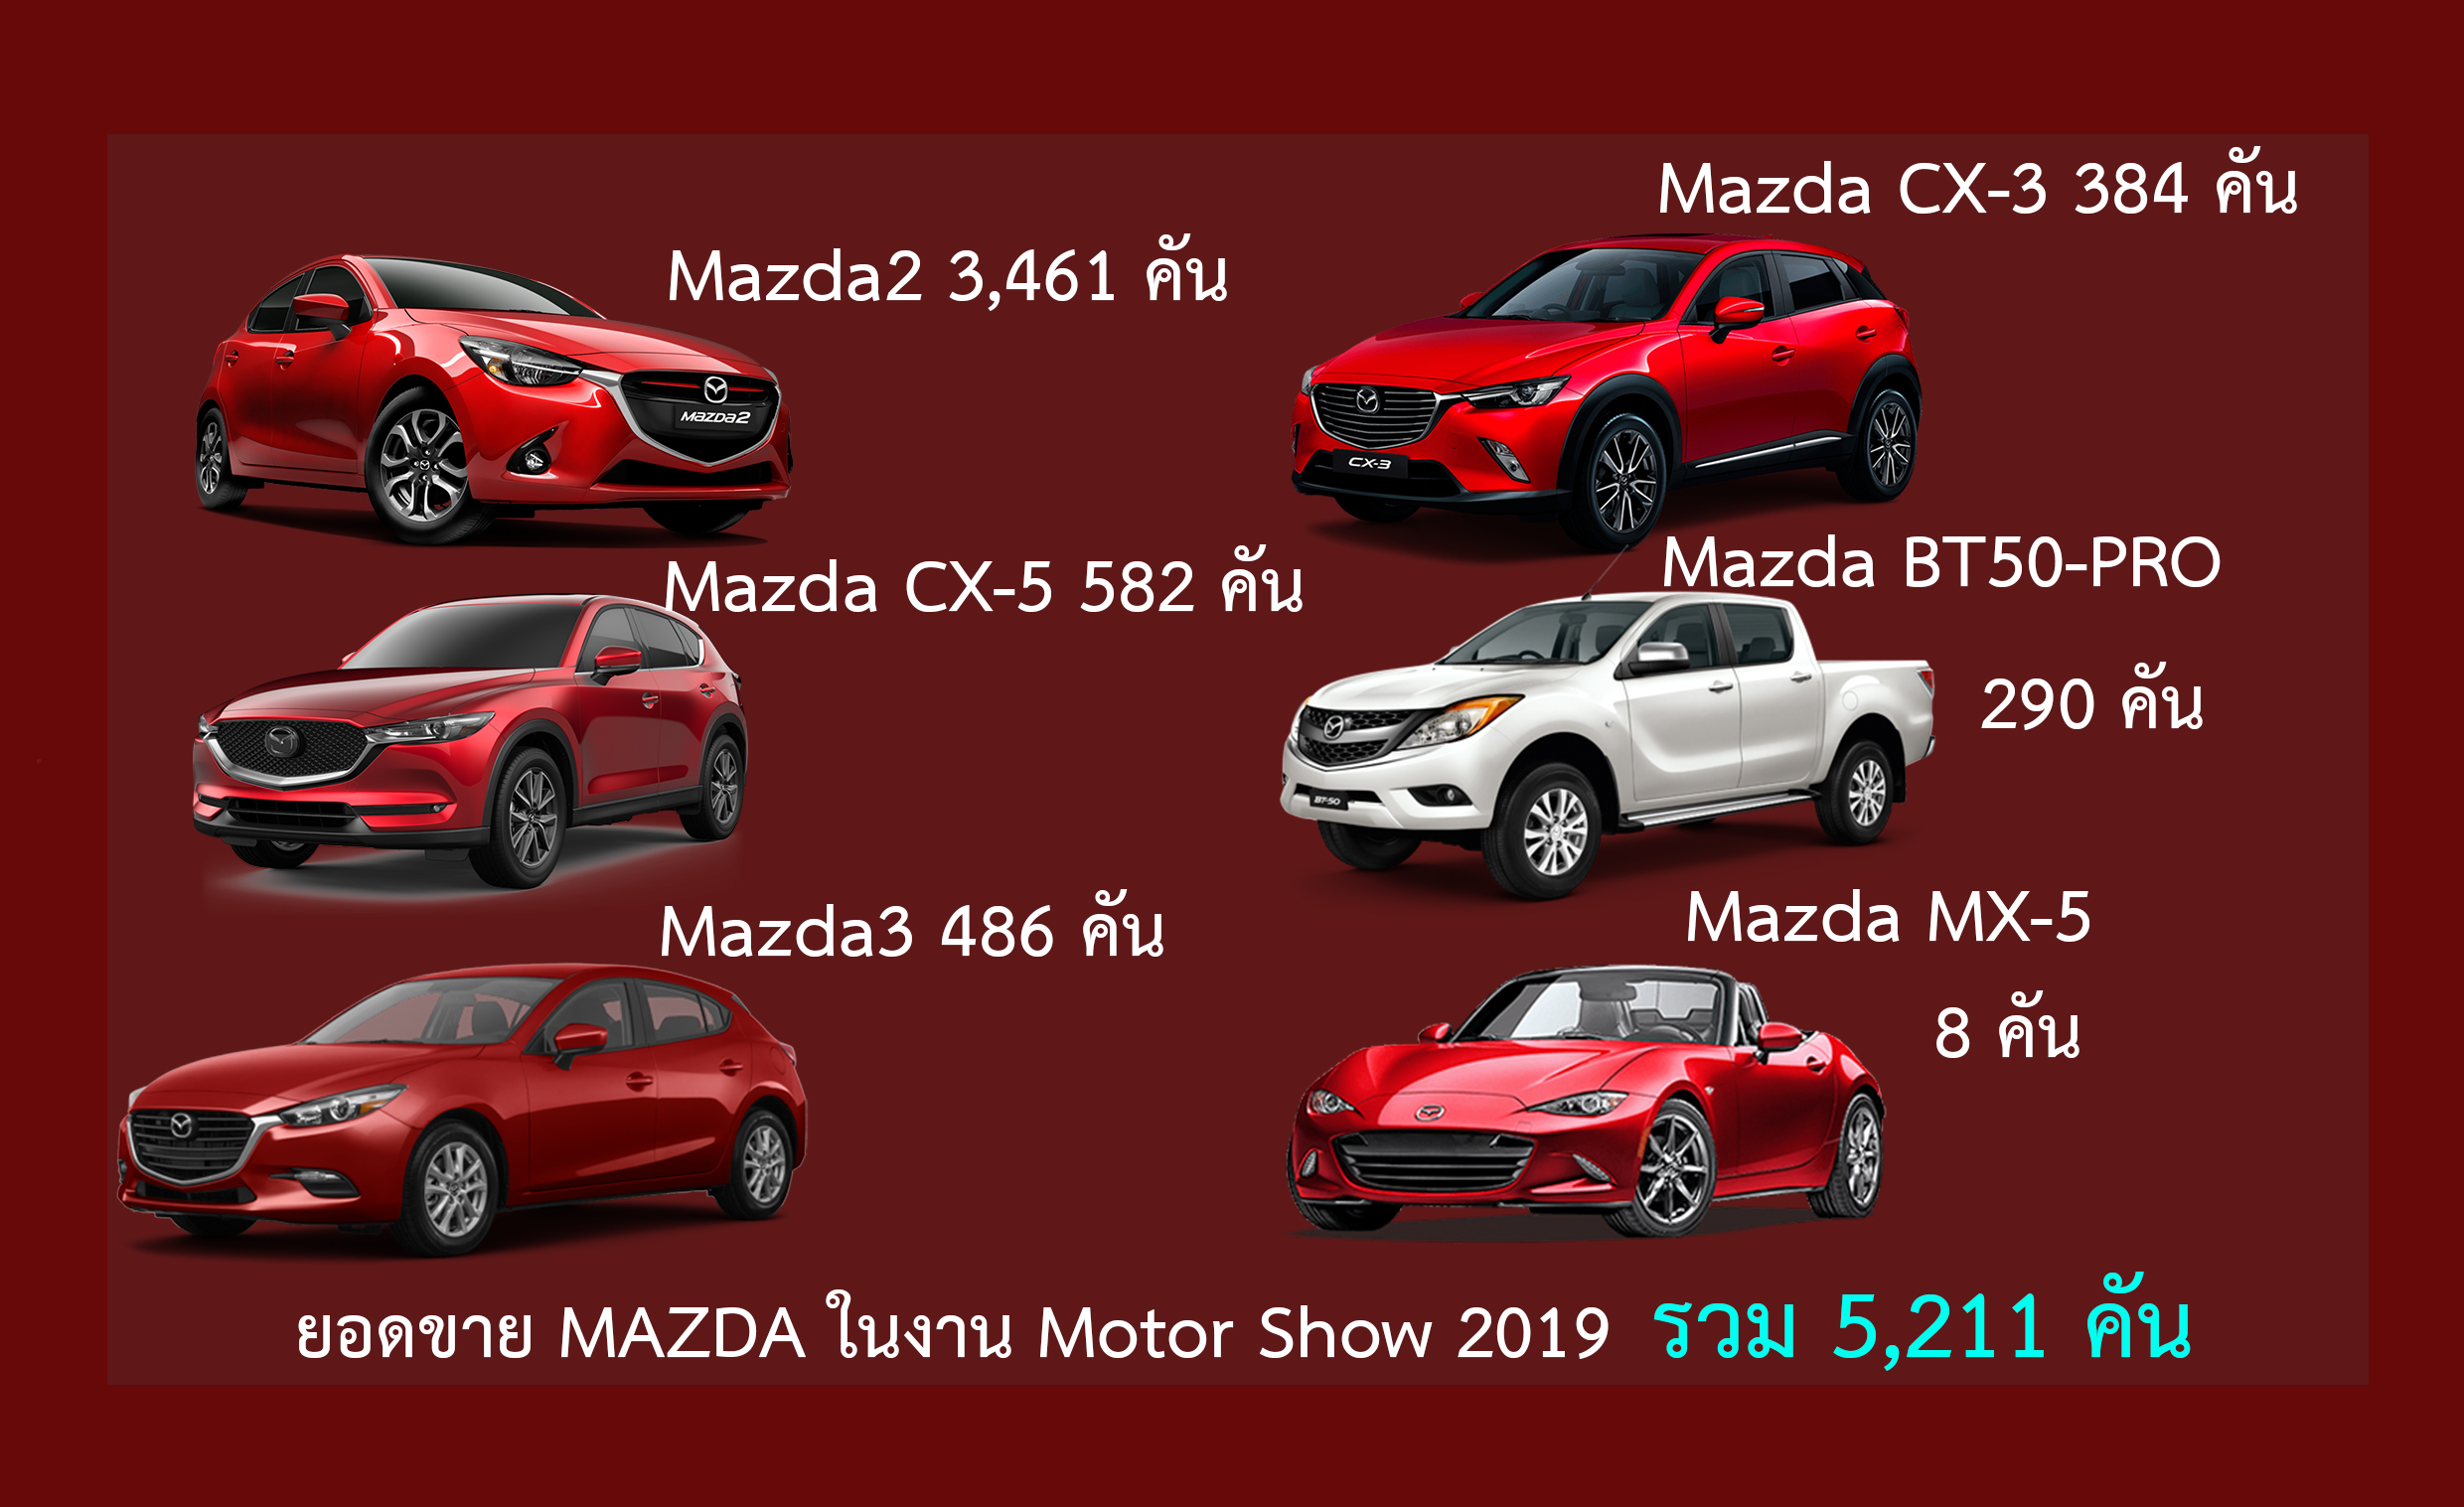 ยอดขาย Mazda ในงาน Motor Show 2019 รวม 5,211 คัน